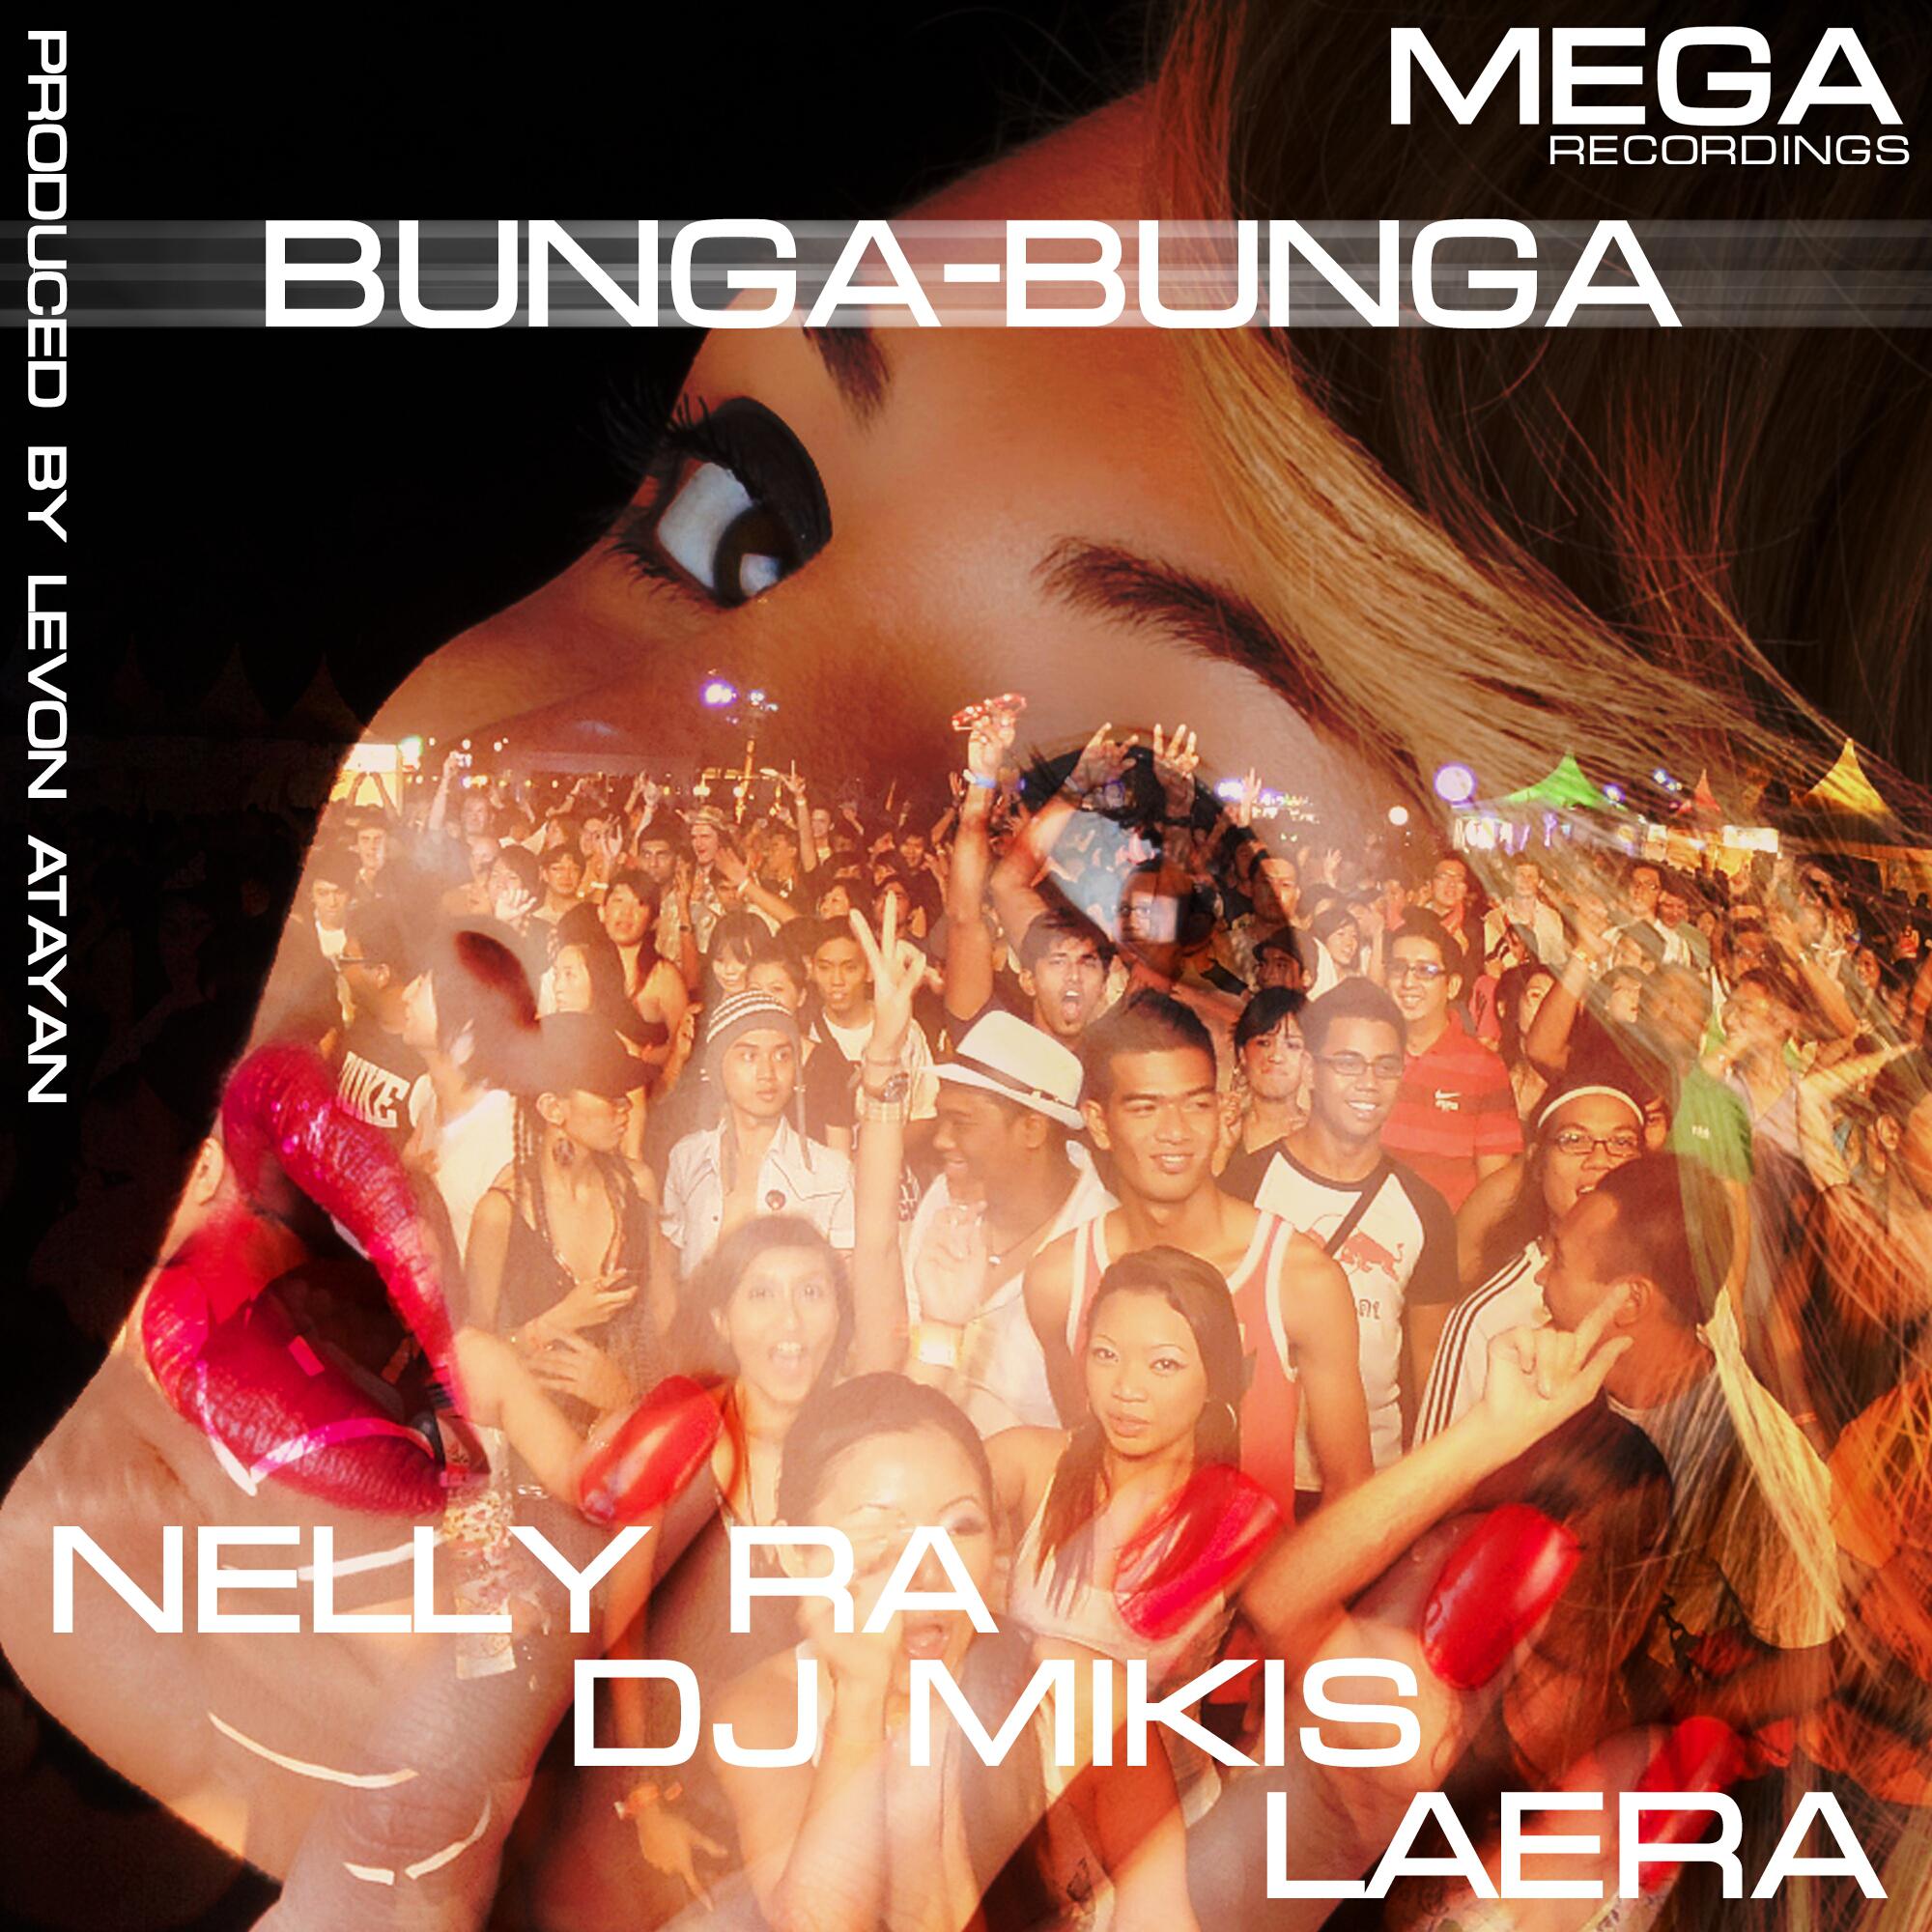 Bunga-Bunga (Original Mix)